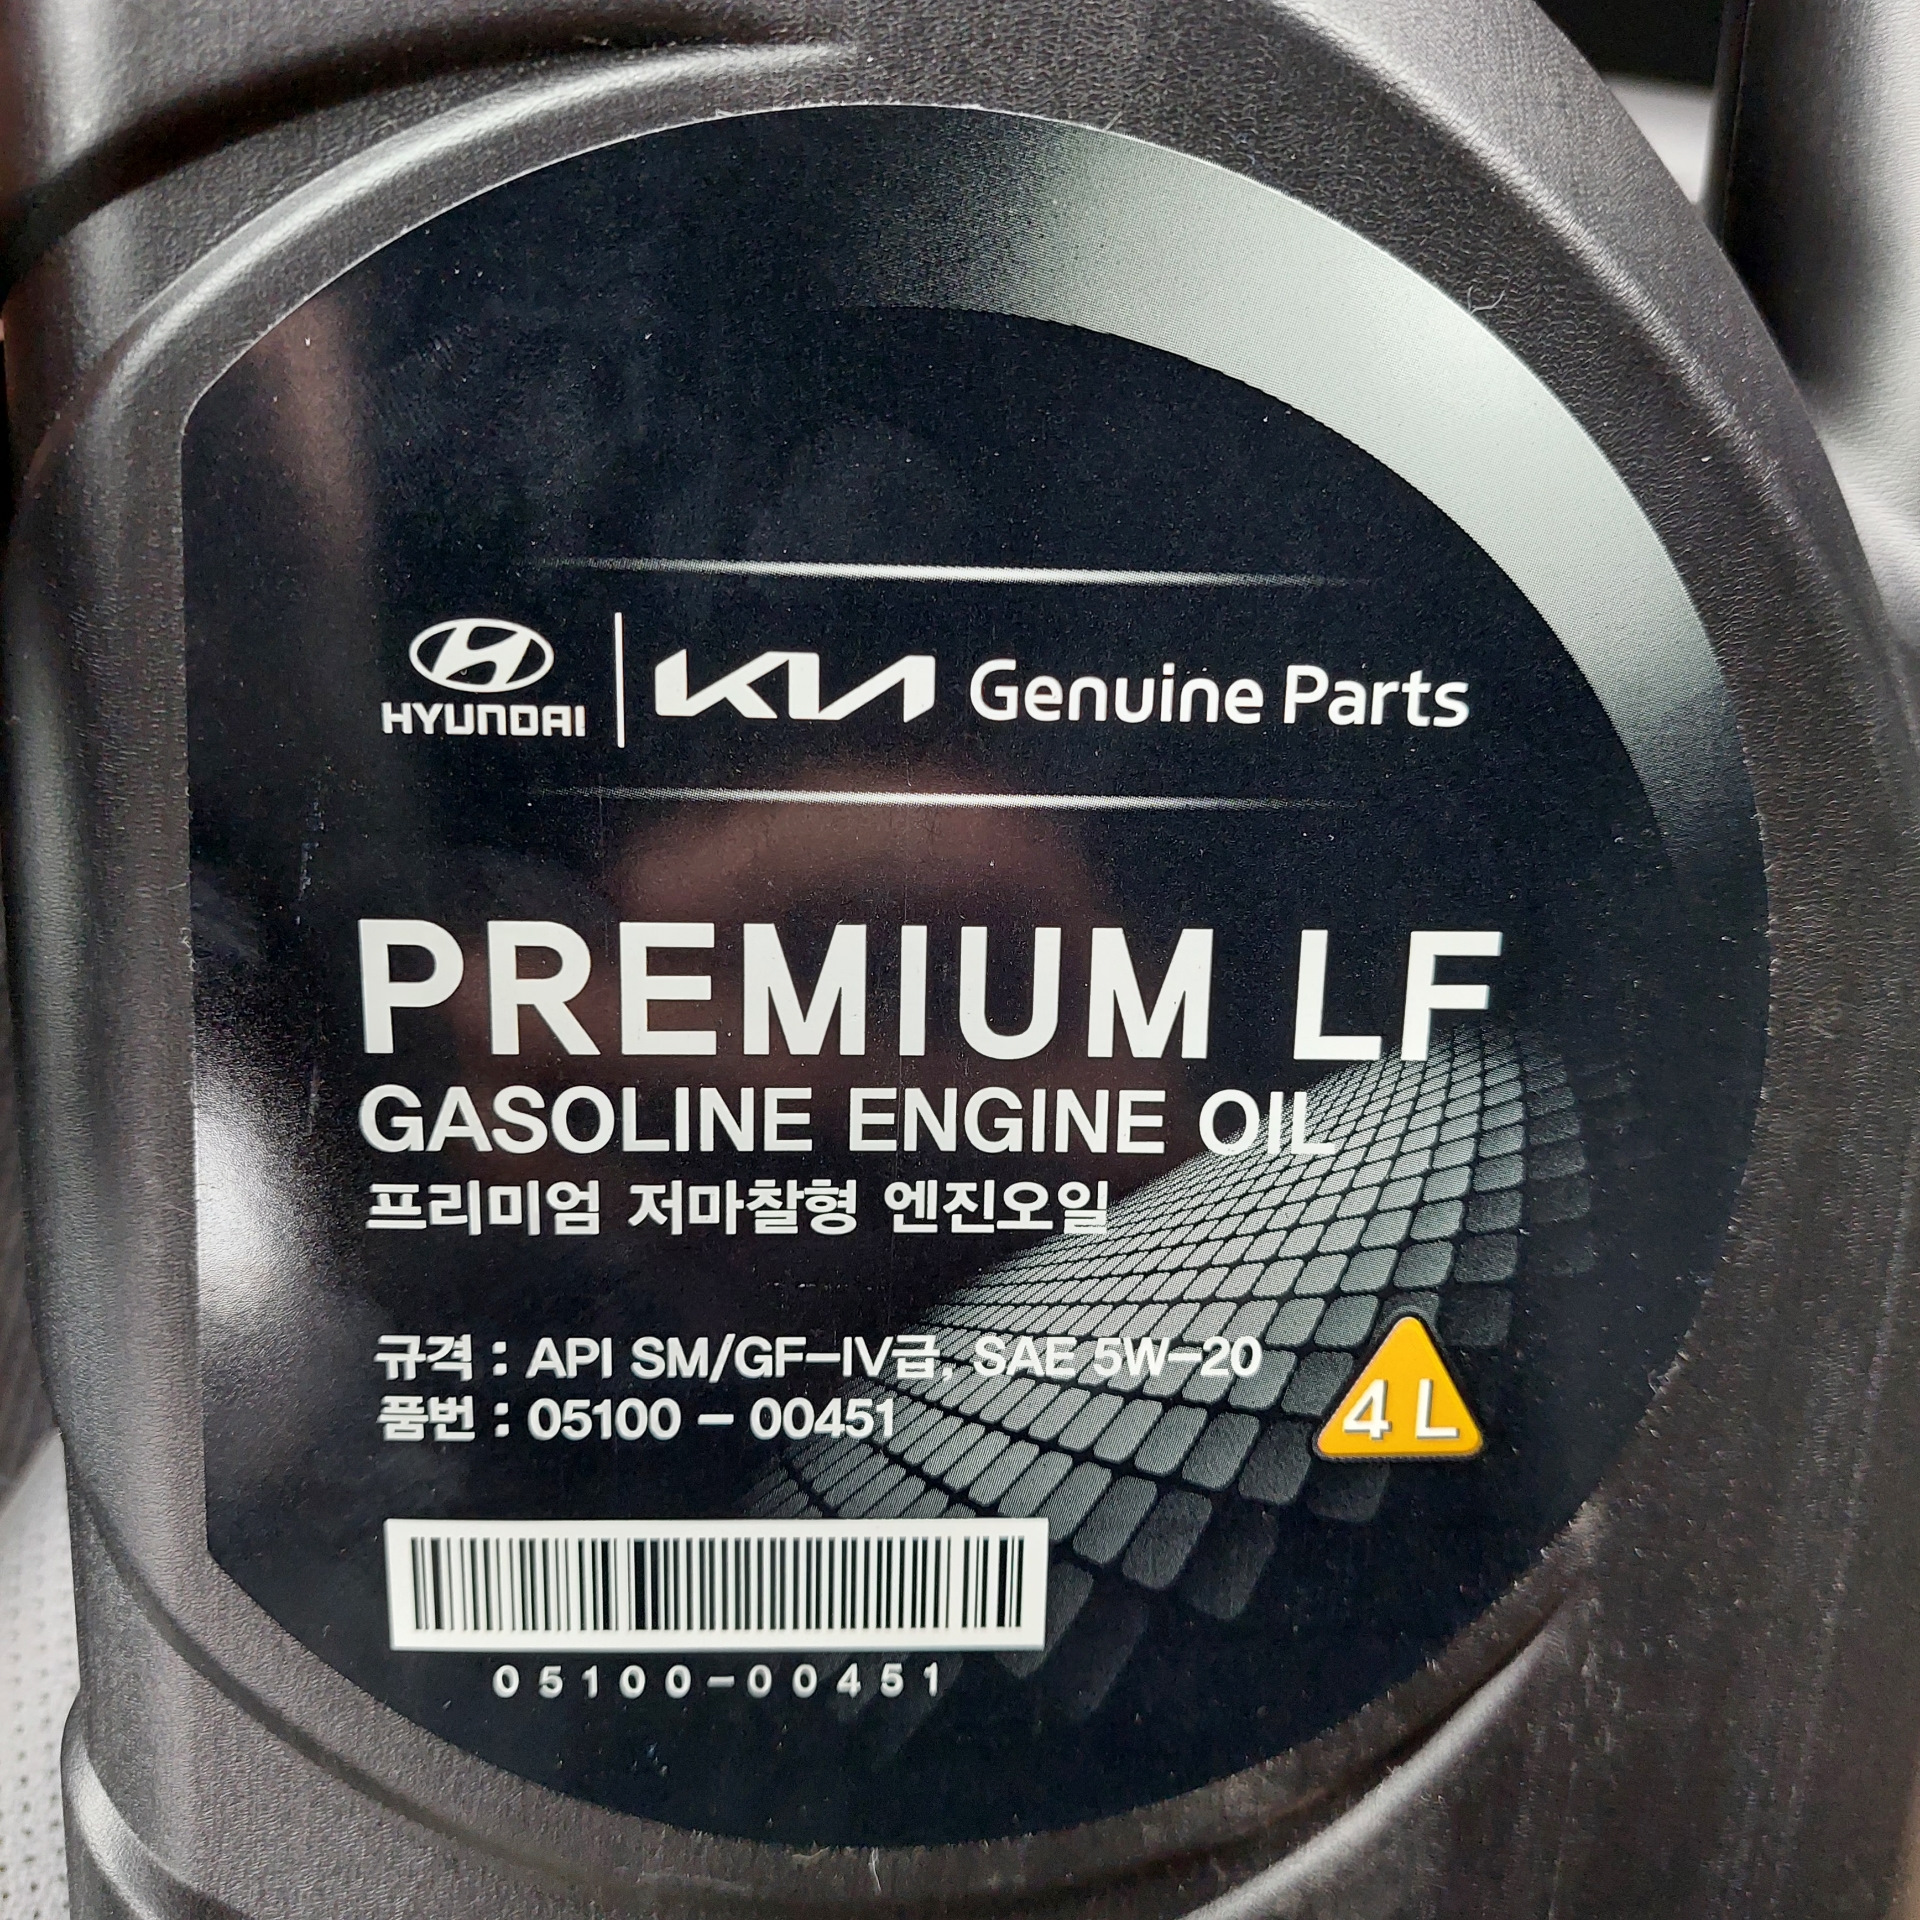 Масло hyundai kia premium. Premium LF gasoline 5w-20. Hyundai Premium LF 5w-20. Hyundai Premium gasoline 5w-20. Масло Хендай 5w20 премиум LF.